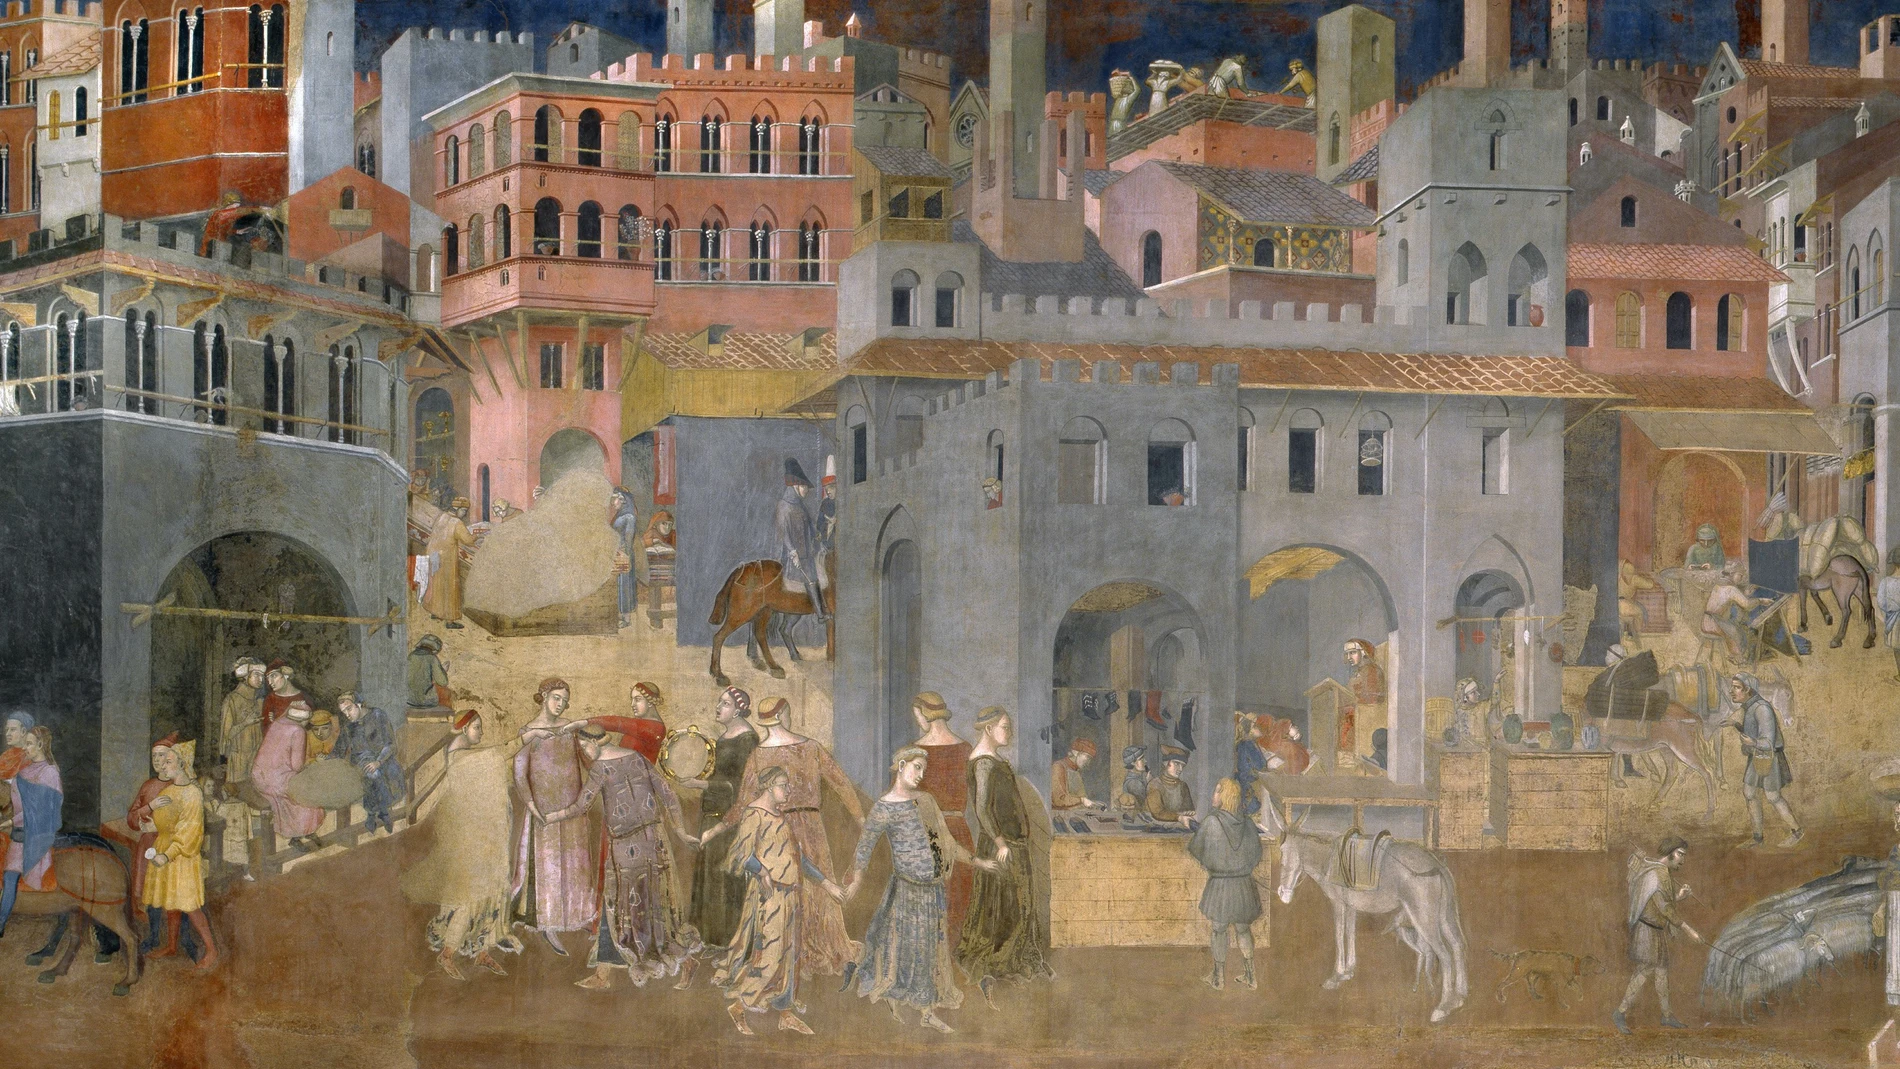 "Los efectos del buen gobierno en la ciudad", fresco de Ambrogio Lorenzetti. El Consejo de los Nueve, que gobernaba Sienna, estaba dominado por los gremios de comerciantes y artesanos.